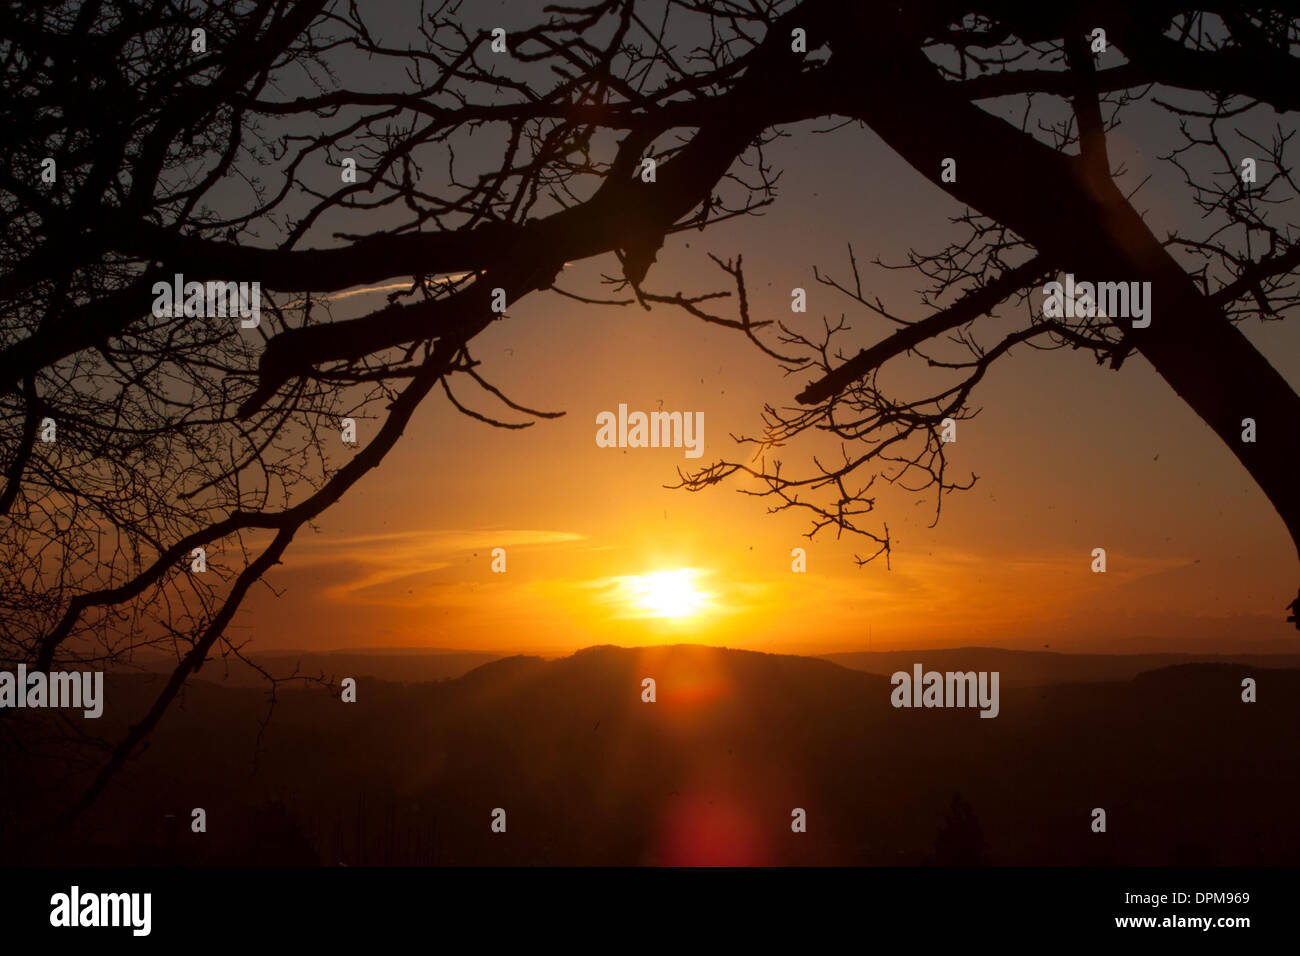 Le soleil se couche sur la campagne Herefordshire vu du haut des collines de Malvern. Le 28 décembre 2013. Banque D'Images